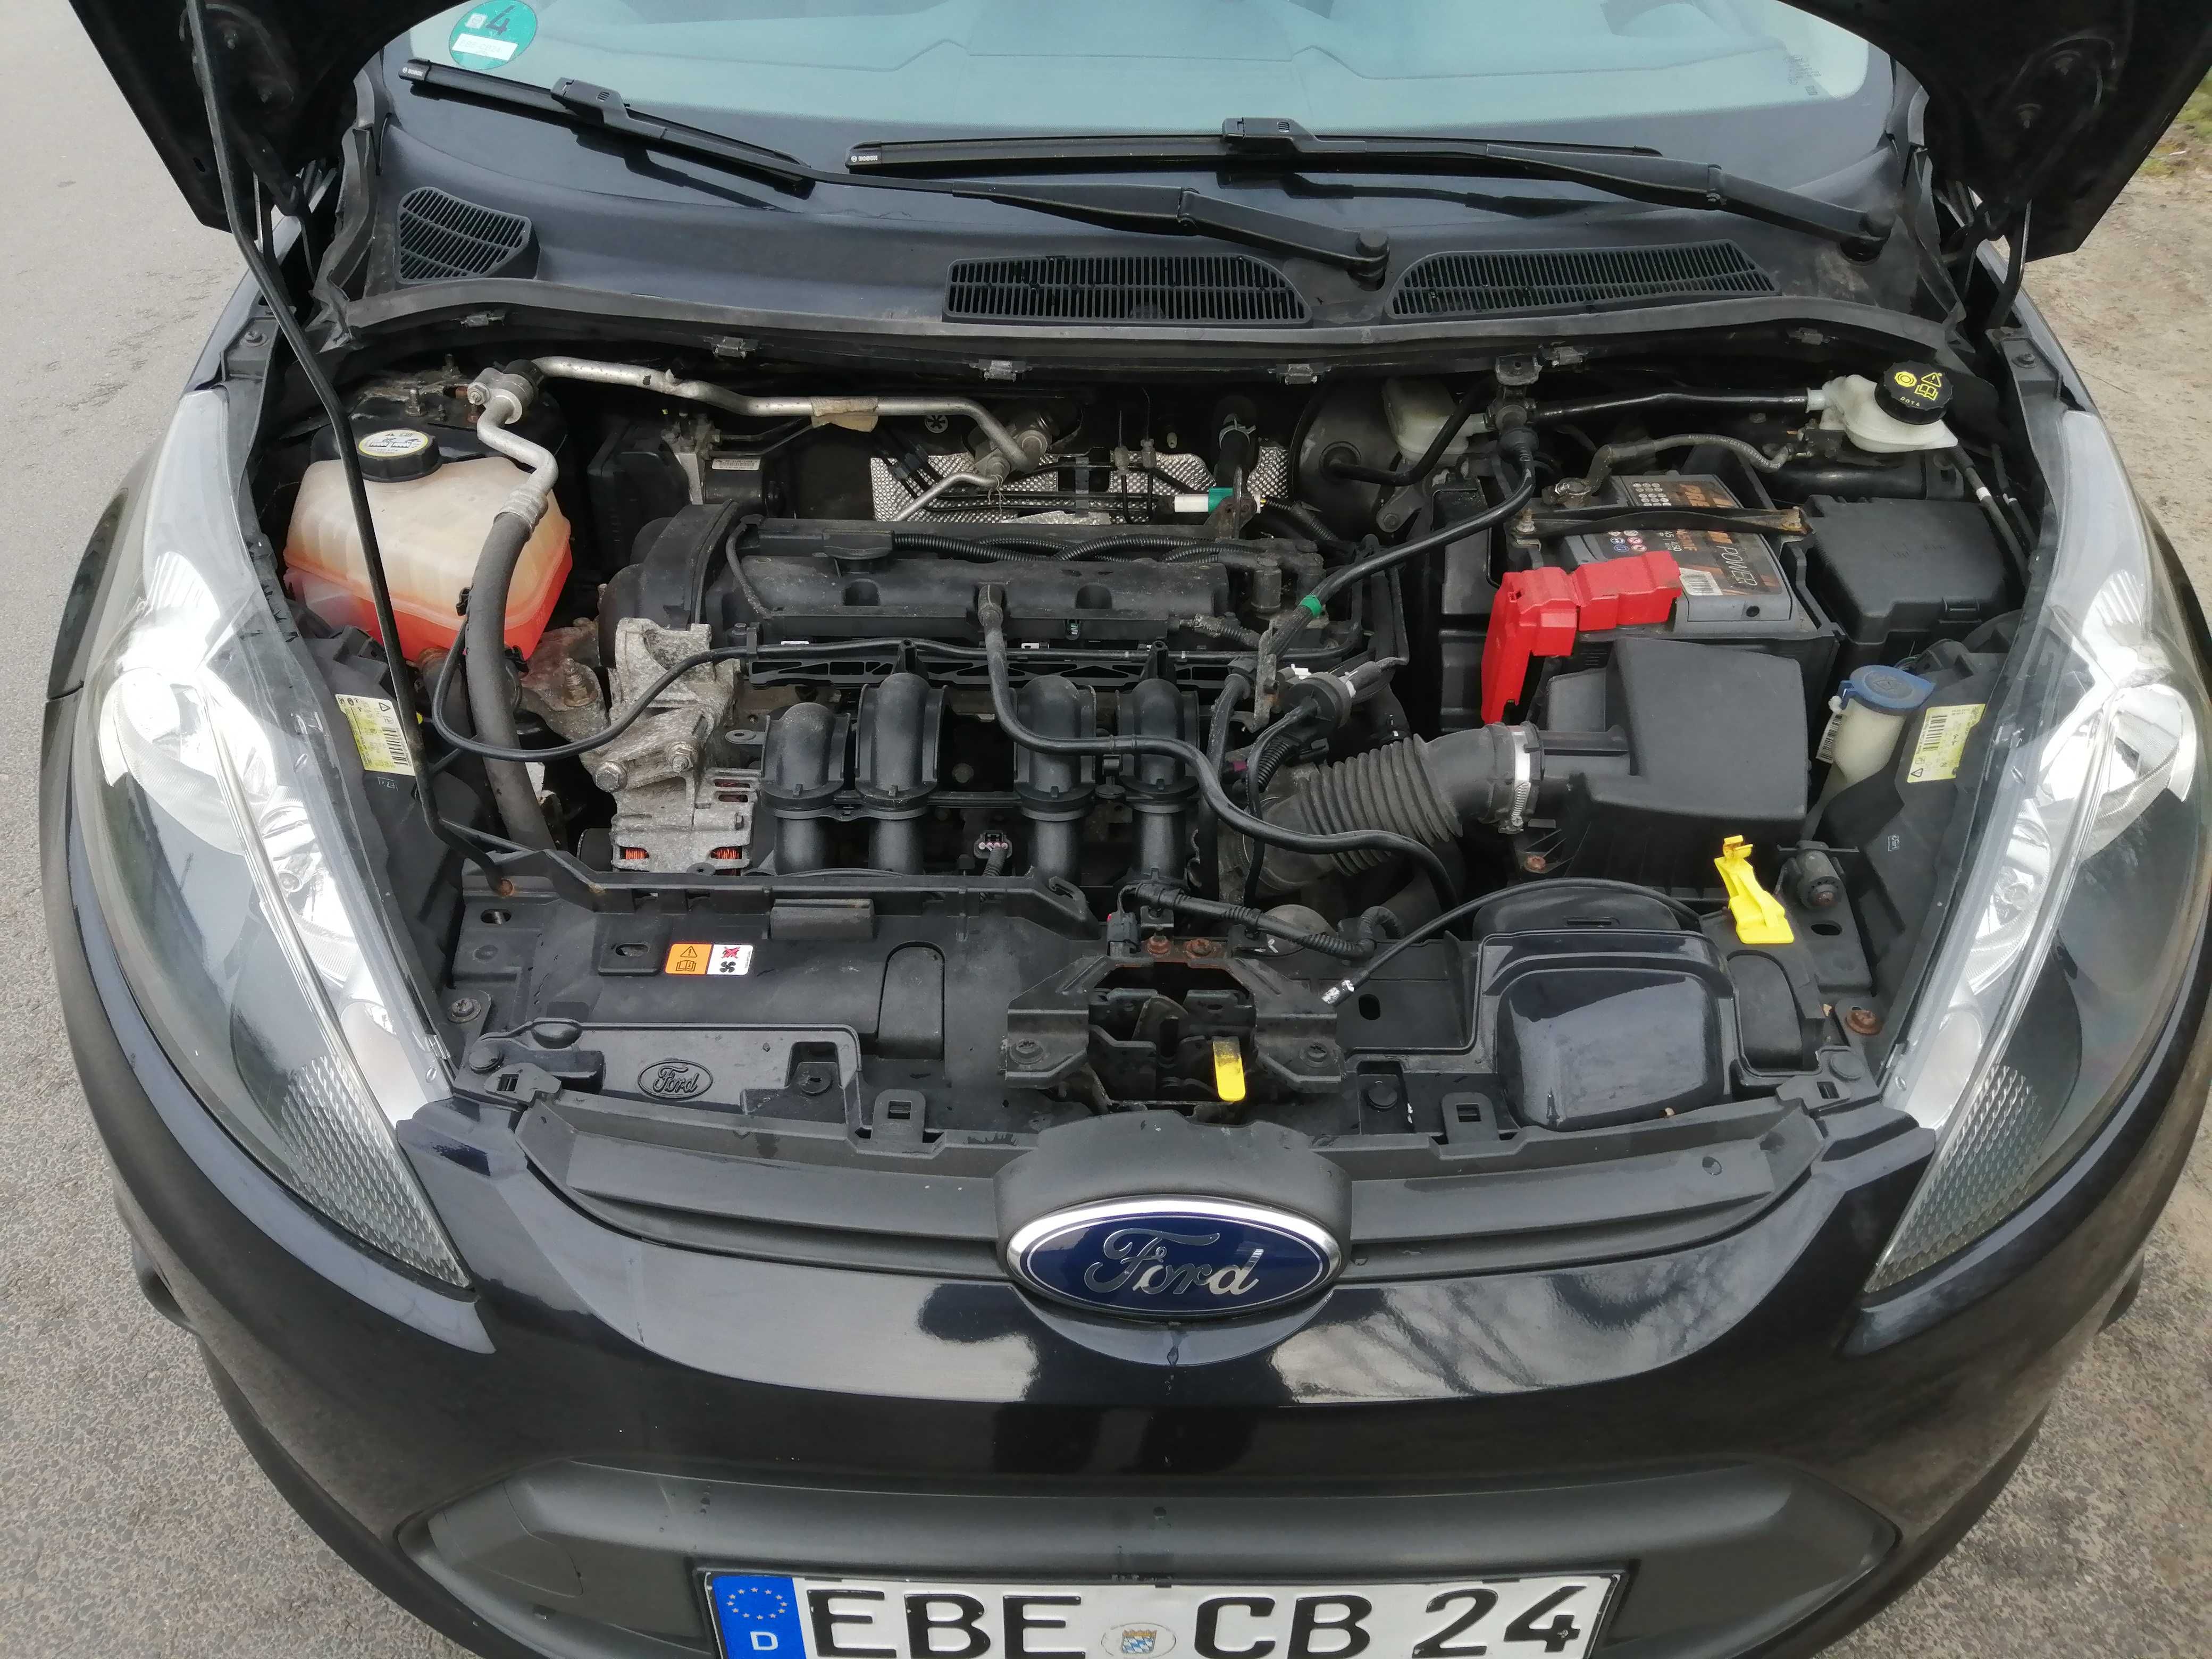 Ford Fiesta 1,2 106 tys km opłacony